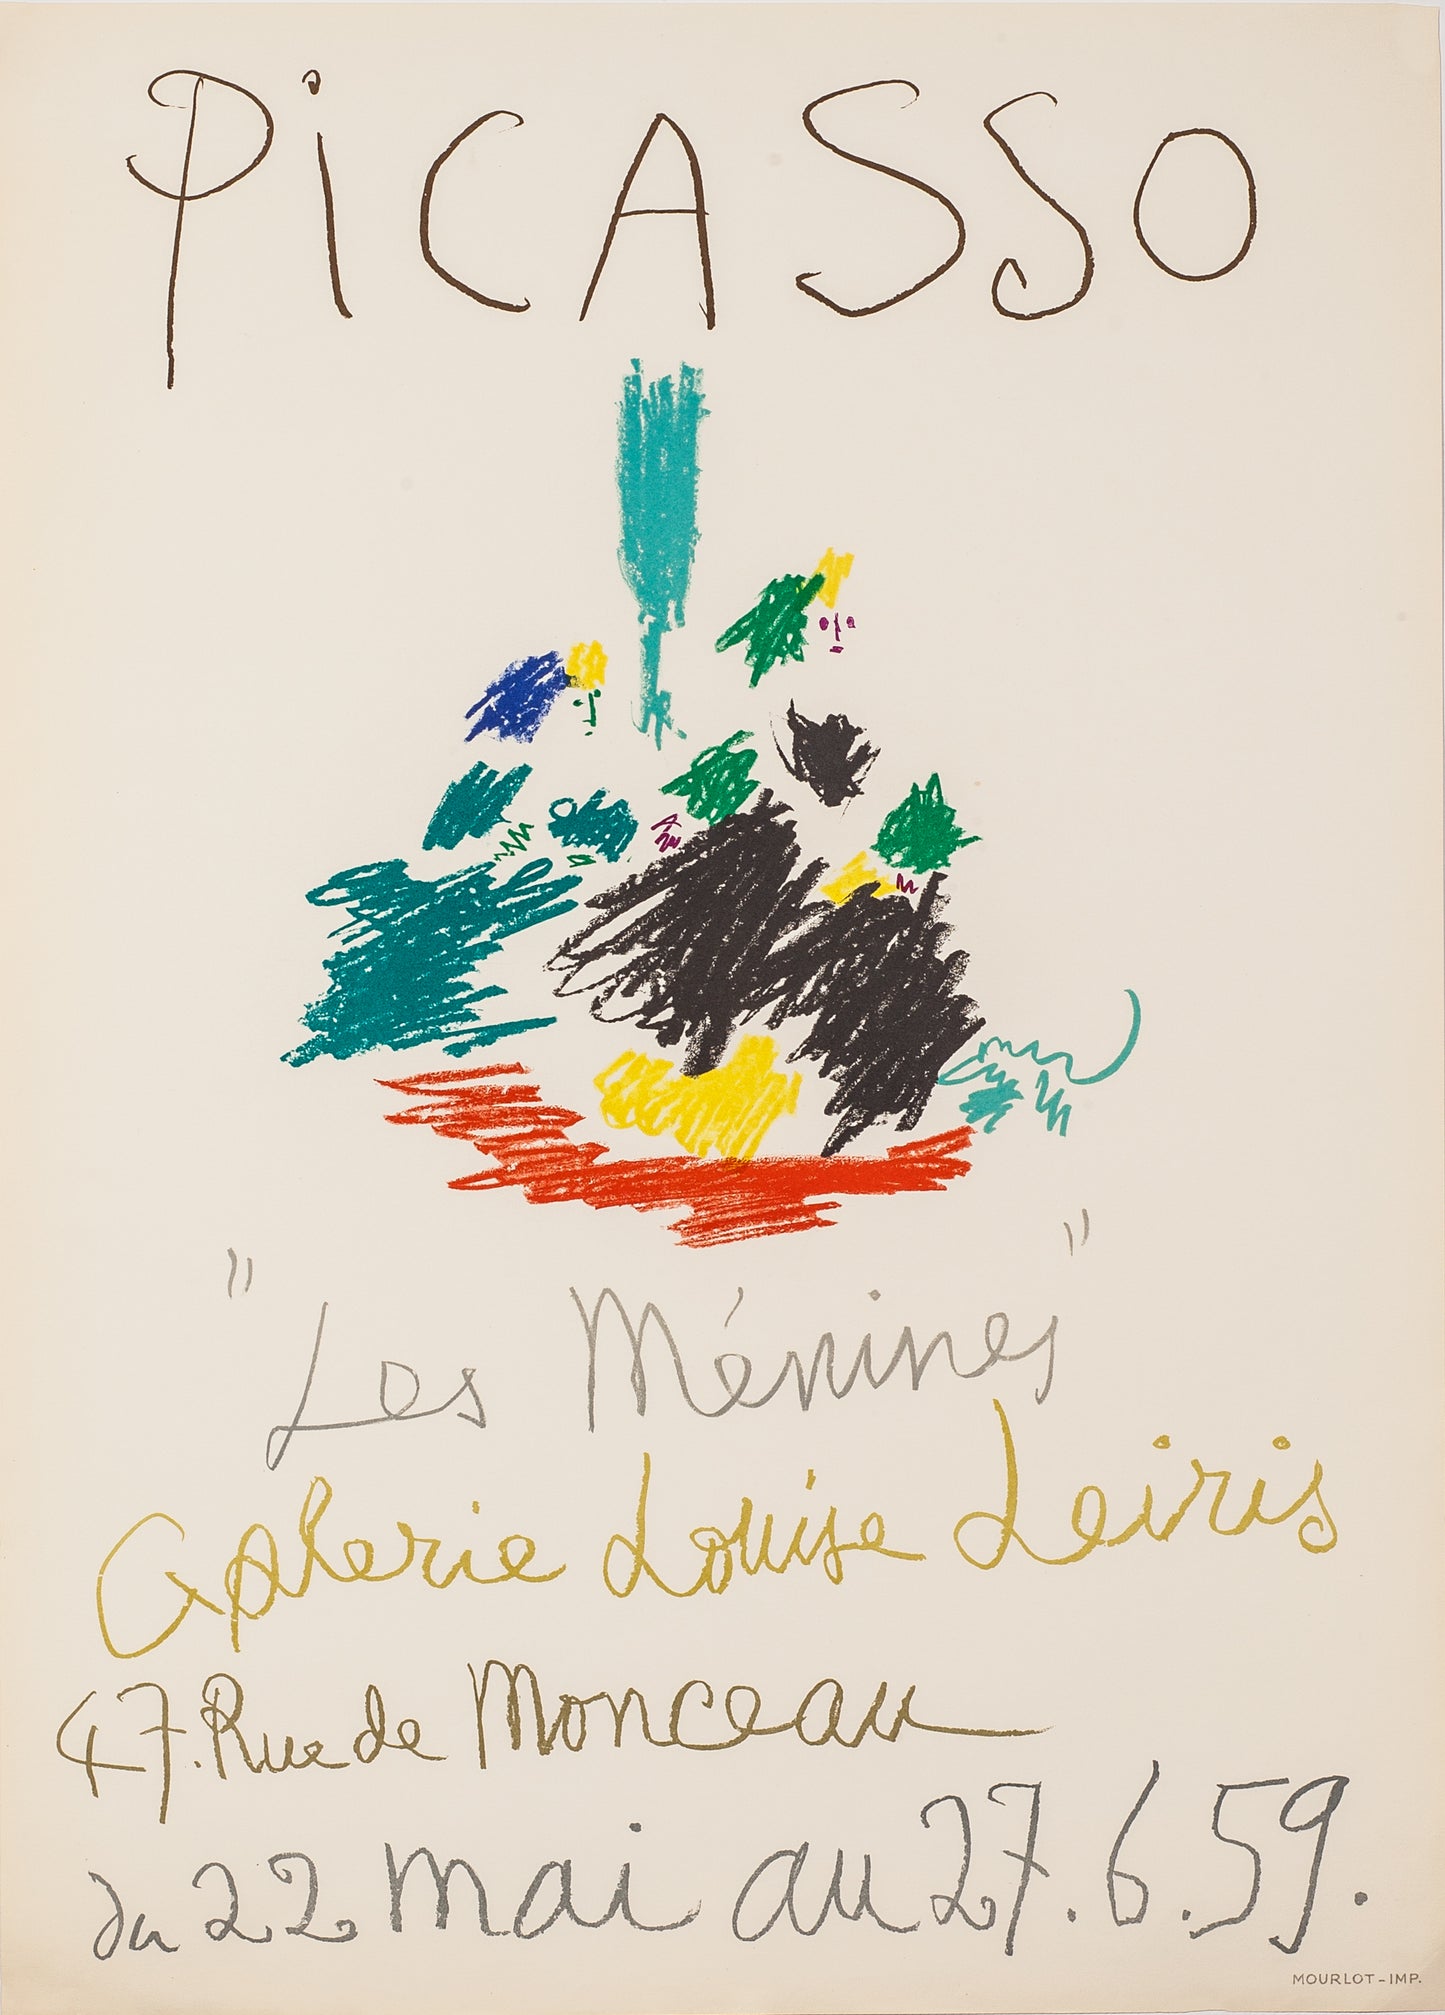 Les Ménines, Galerie Louise Leiris by Pablo Picasso - Mourlot Editions - Fine_Art - Poster - Lithograph - Wall Art - Vintage - Prints - Original